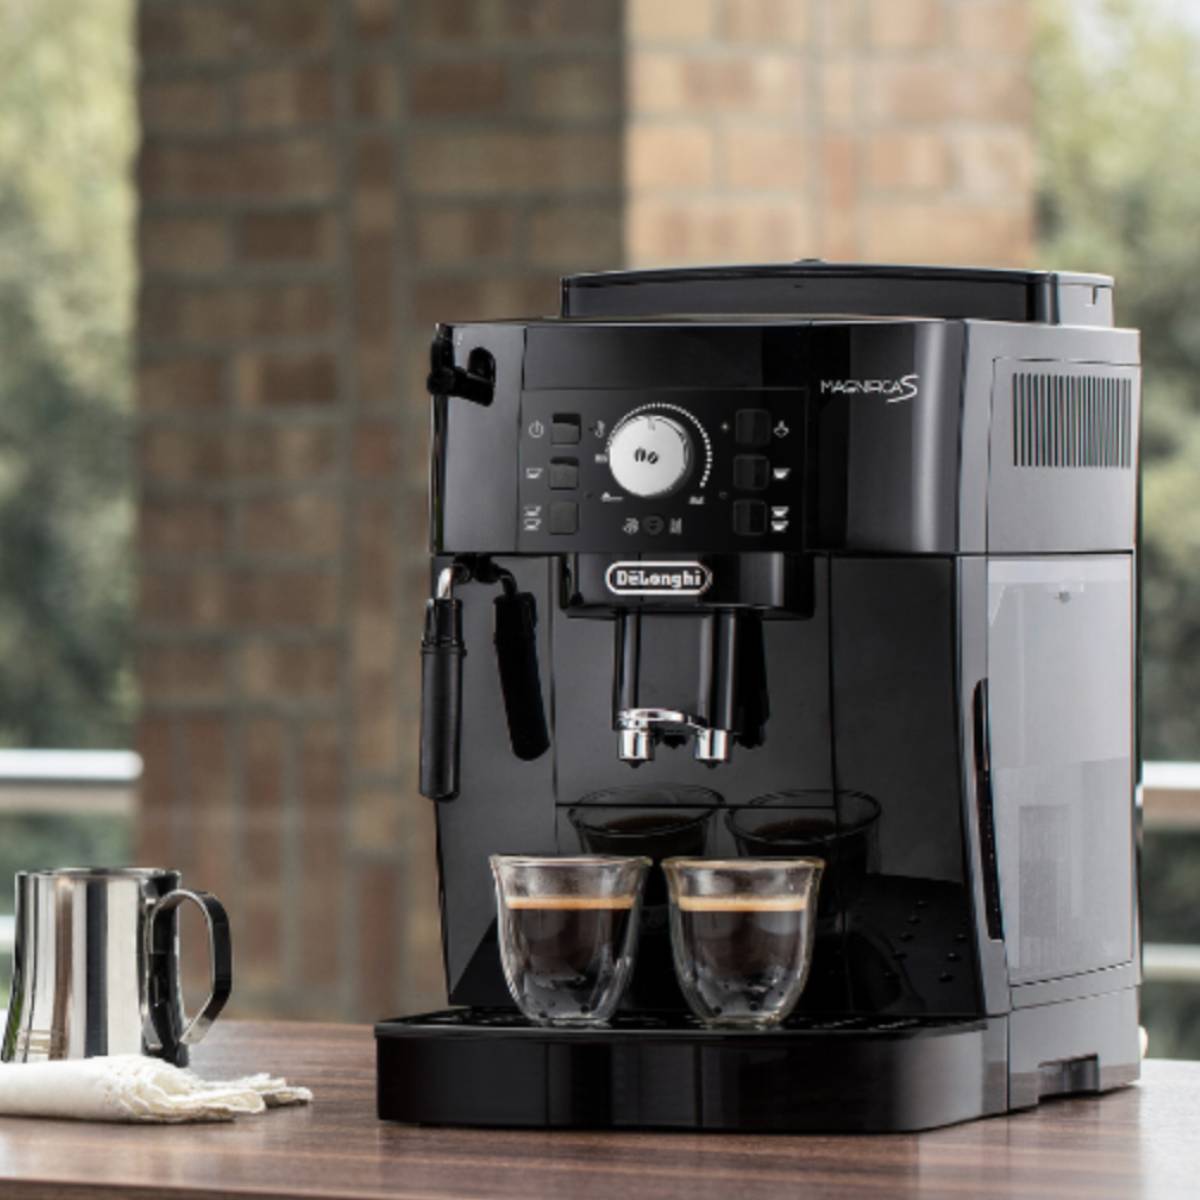 La cafetera De'Longhi Magnifica S ara per 200€ menys; fuig de les càpsules i gaudeix del cafè perfecte